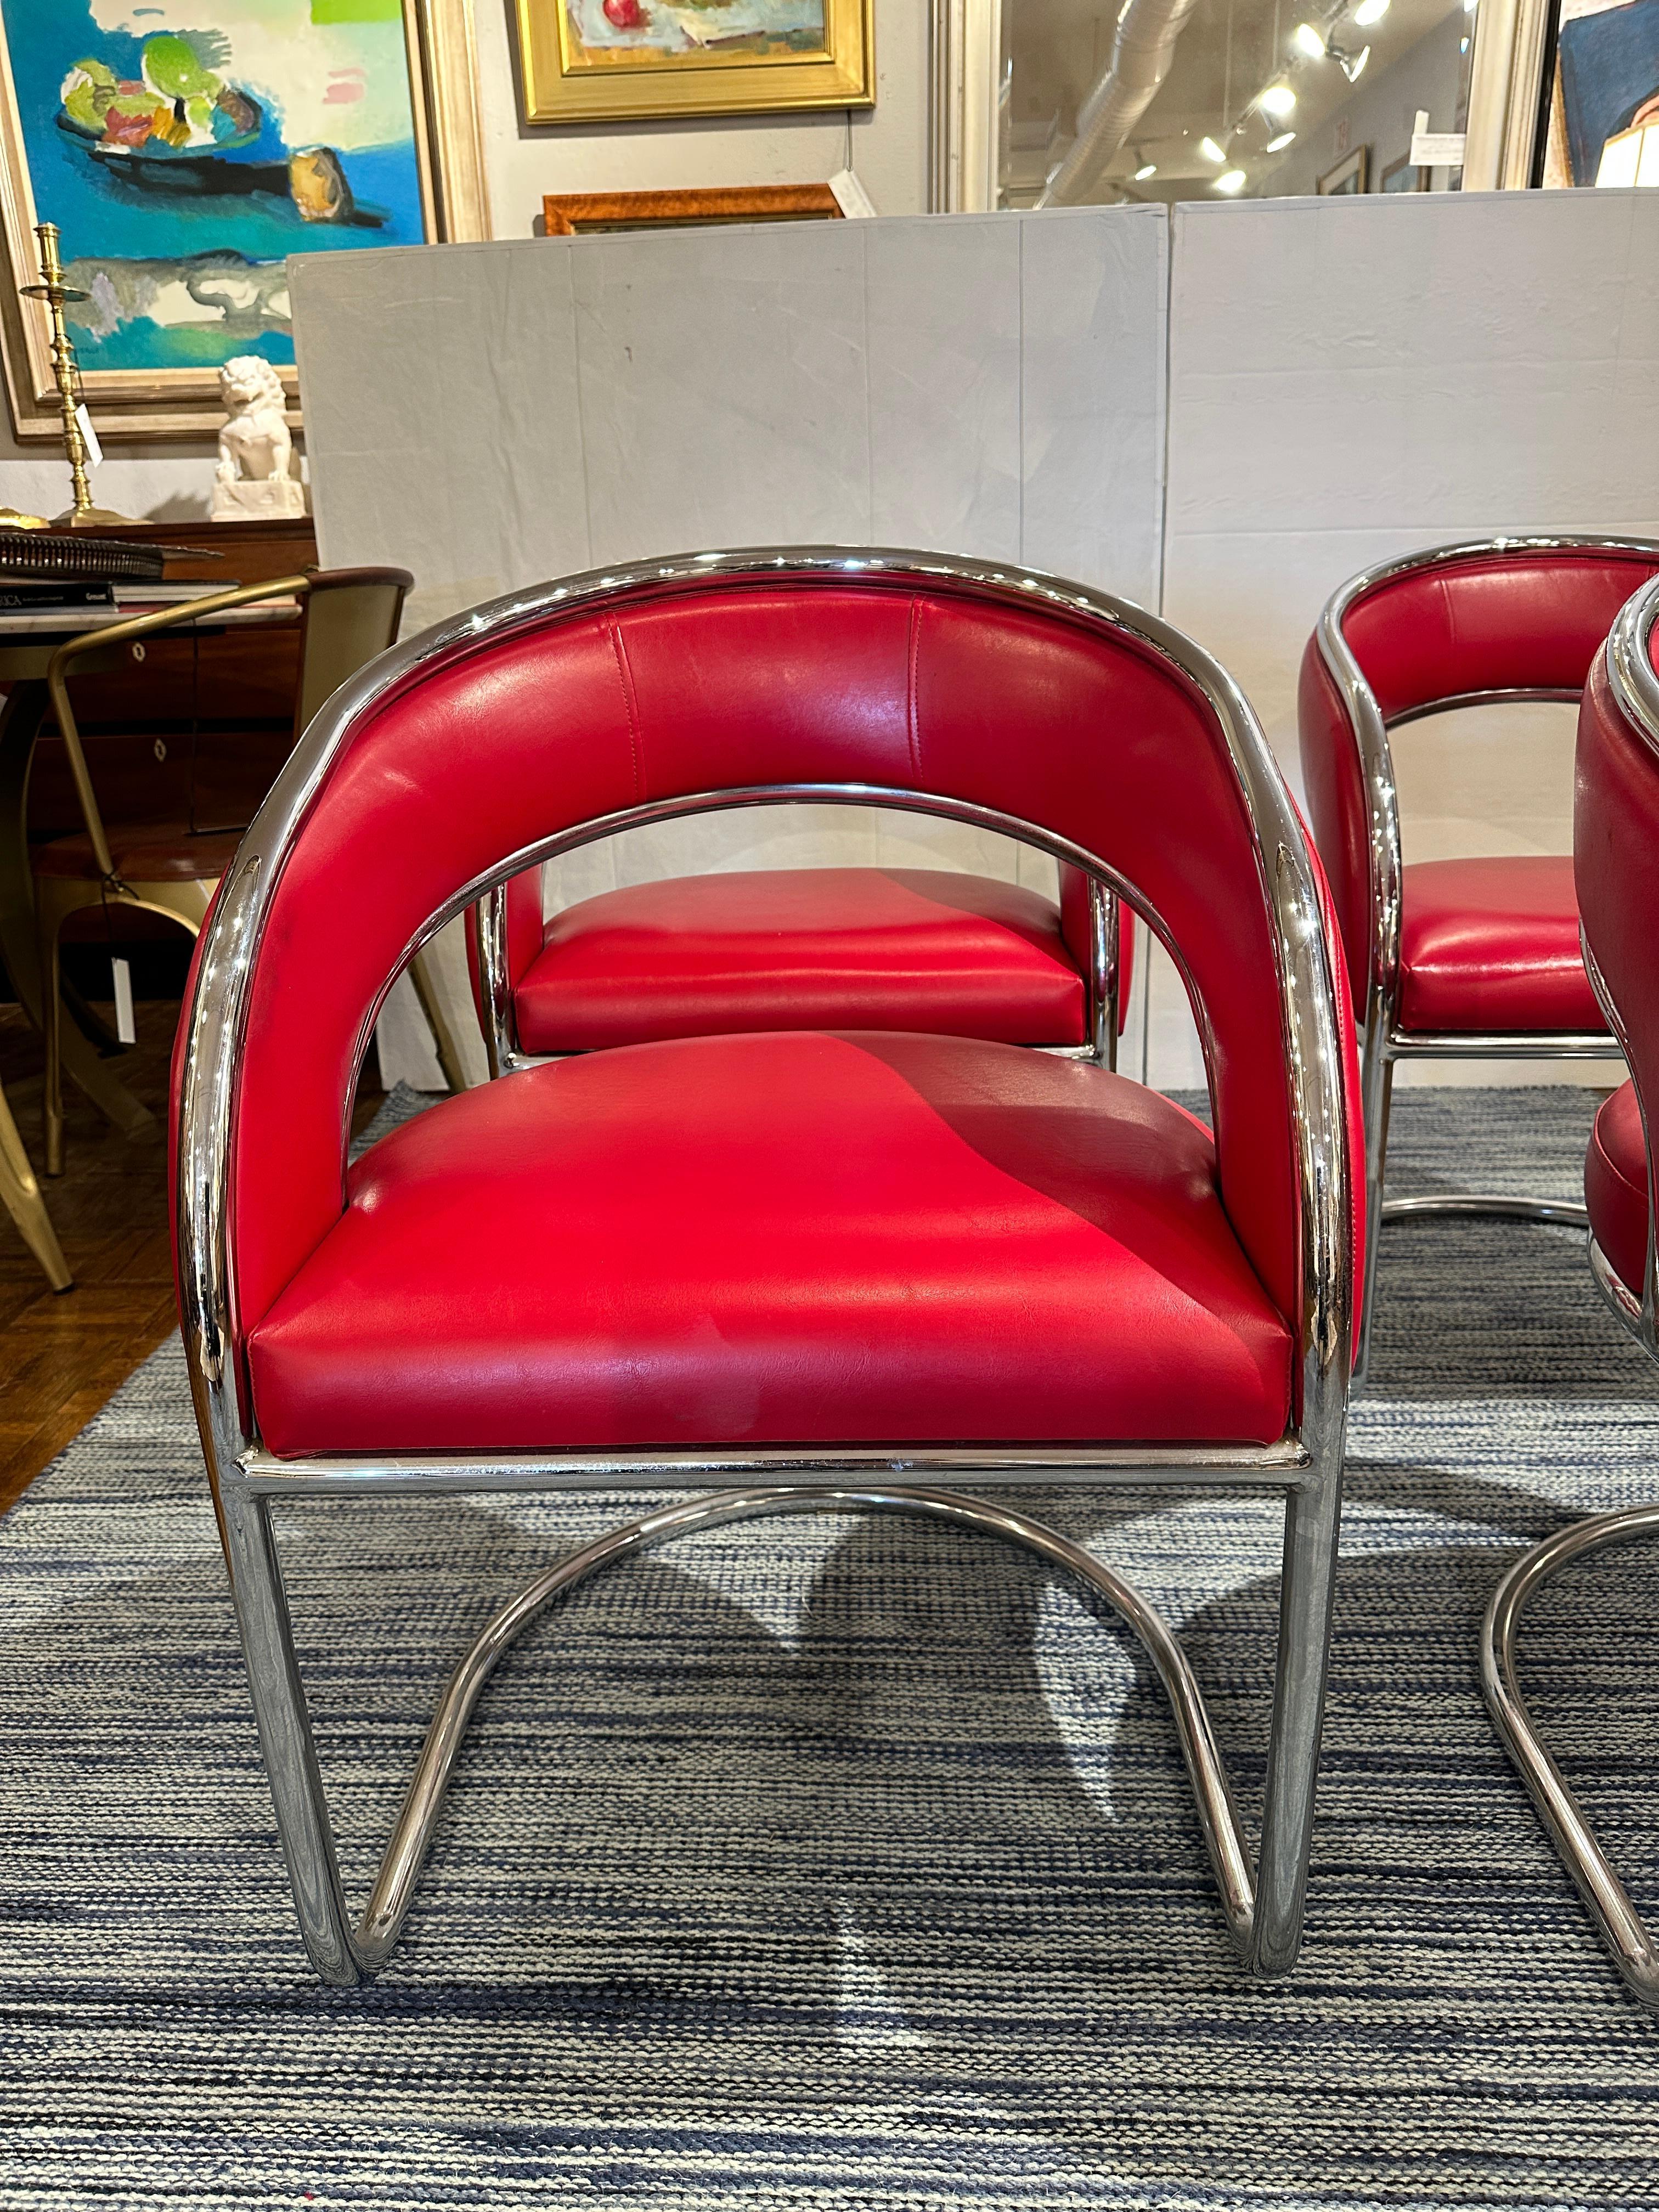 Satz von 4.  Mid Century Modern Stühle aus den 1960er Jahren.  Gepolstert in leuchtendem, fröhlichem Rot  Leder, umrahmt von glänzendem Chrom.  Sehr bequem zum Faulenzen oder als Spieltischstühle.  In sehr gutem Zustand.